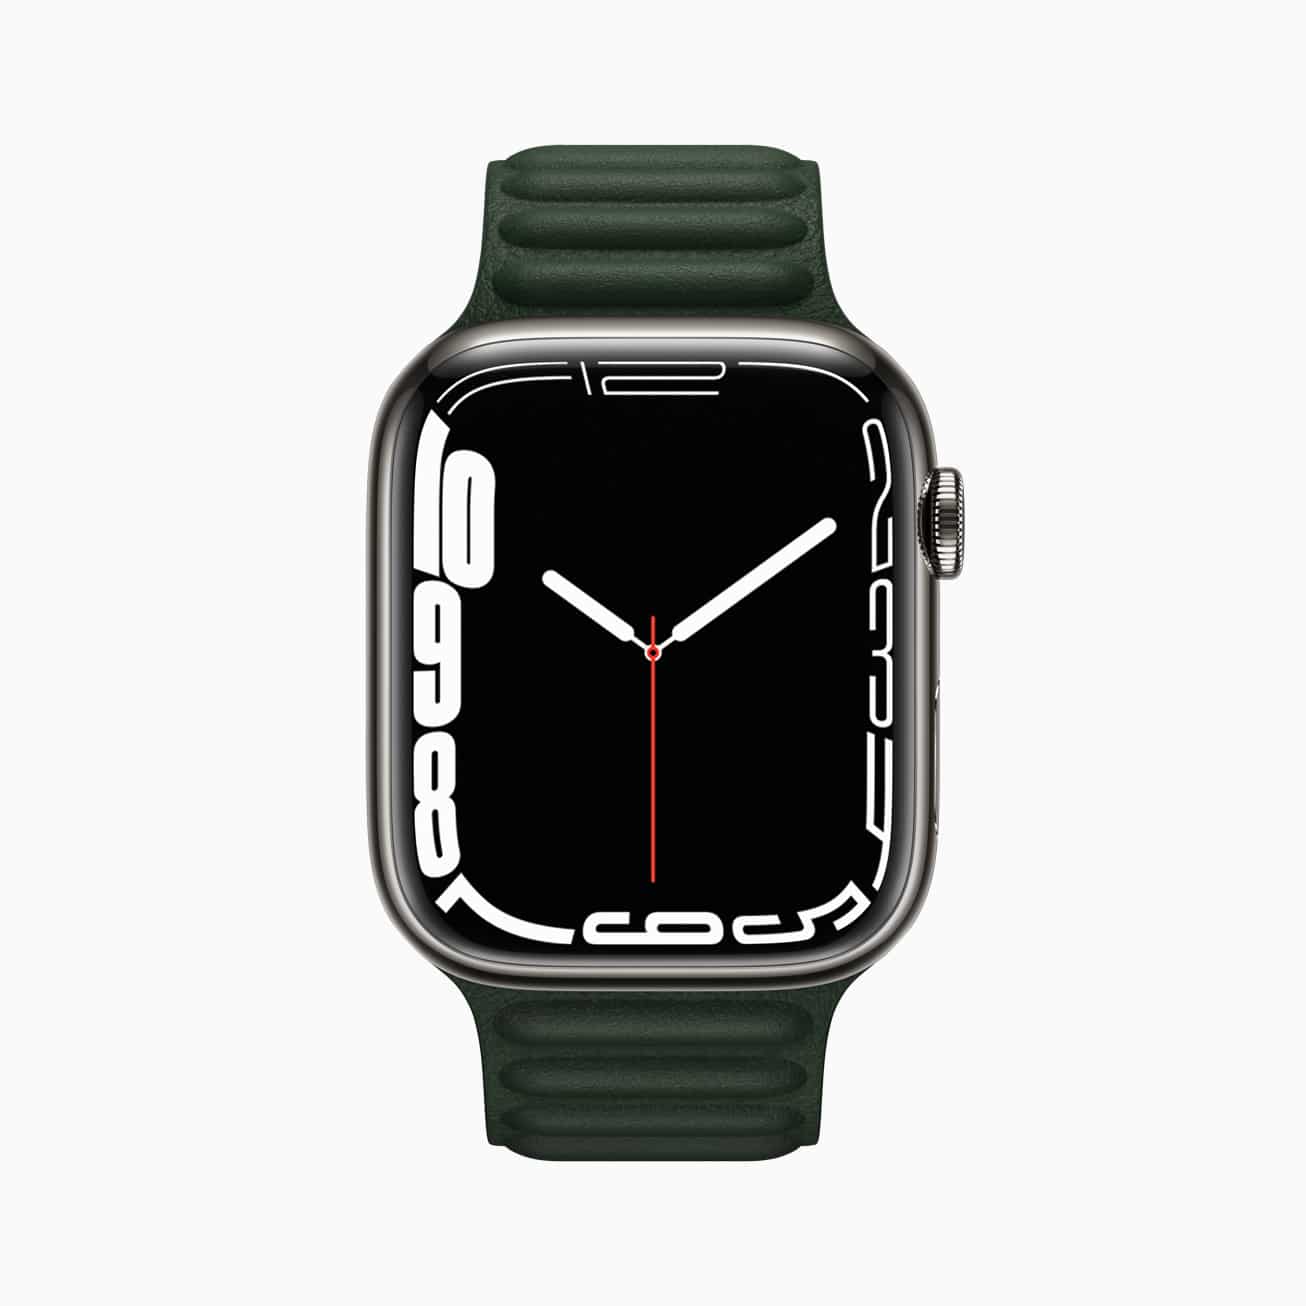 Apple Watch Series 7 ra mắt với màn hình tràn viền lớn hơn, hai kích thước 41mm và 45mm mới, giá 399 USD